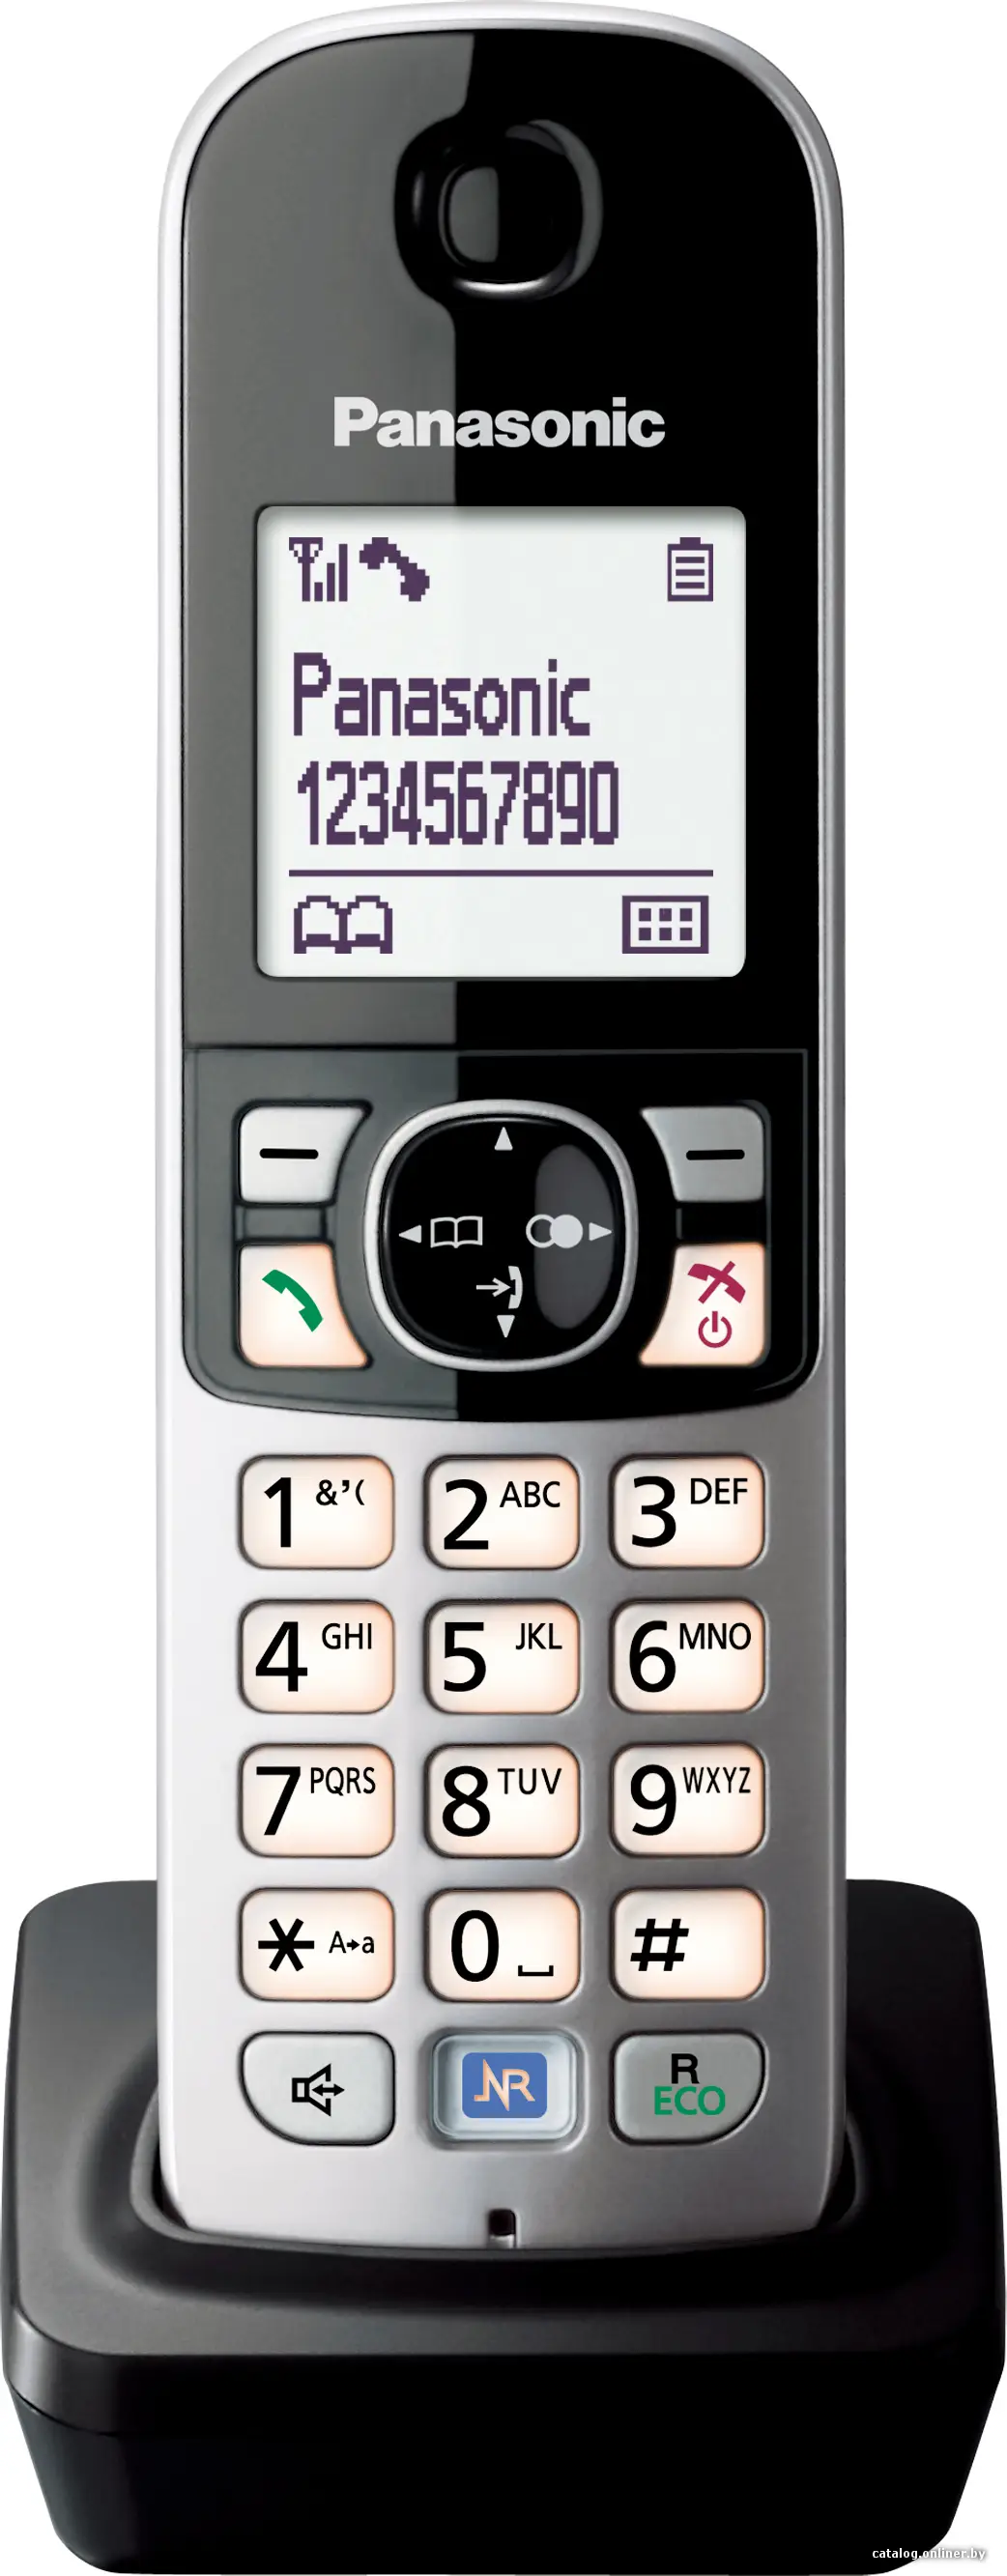 Купить Дополнительная телефонная трубка Panasonic KX-TGA681RUB, цена, опт и розница